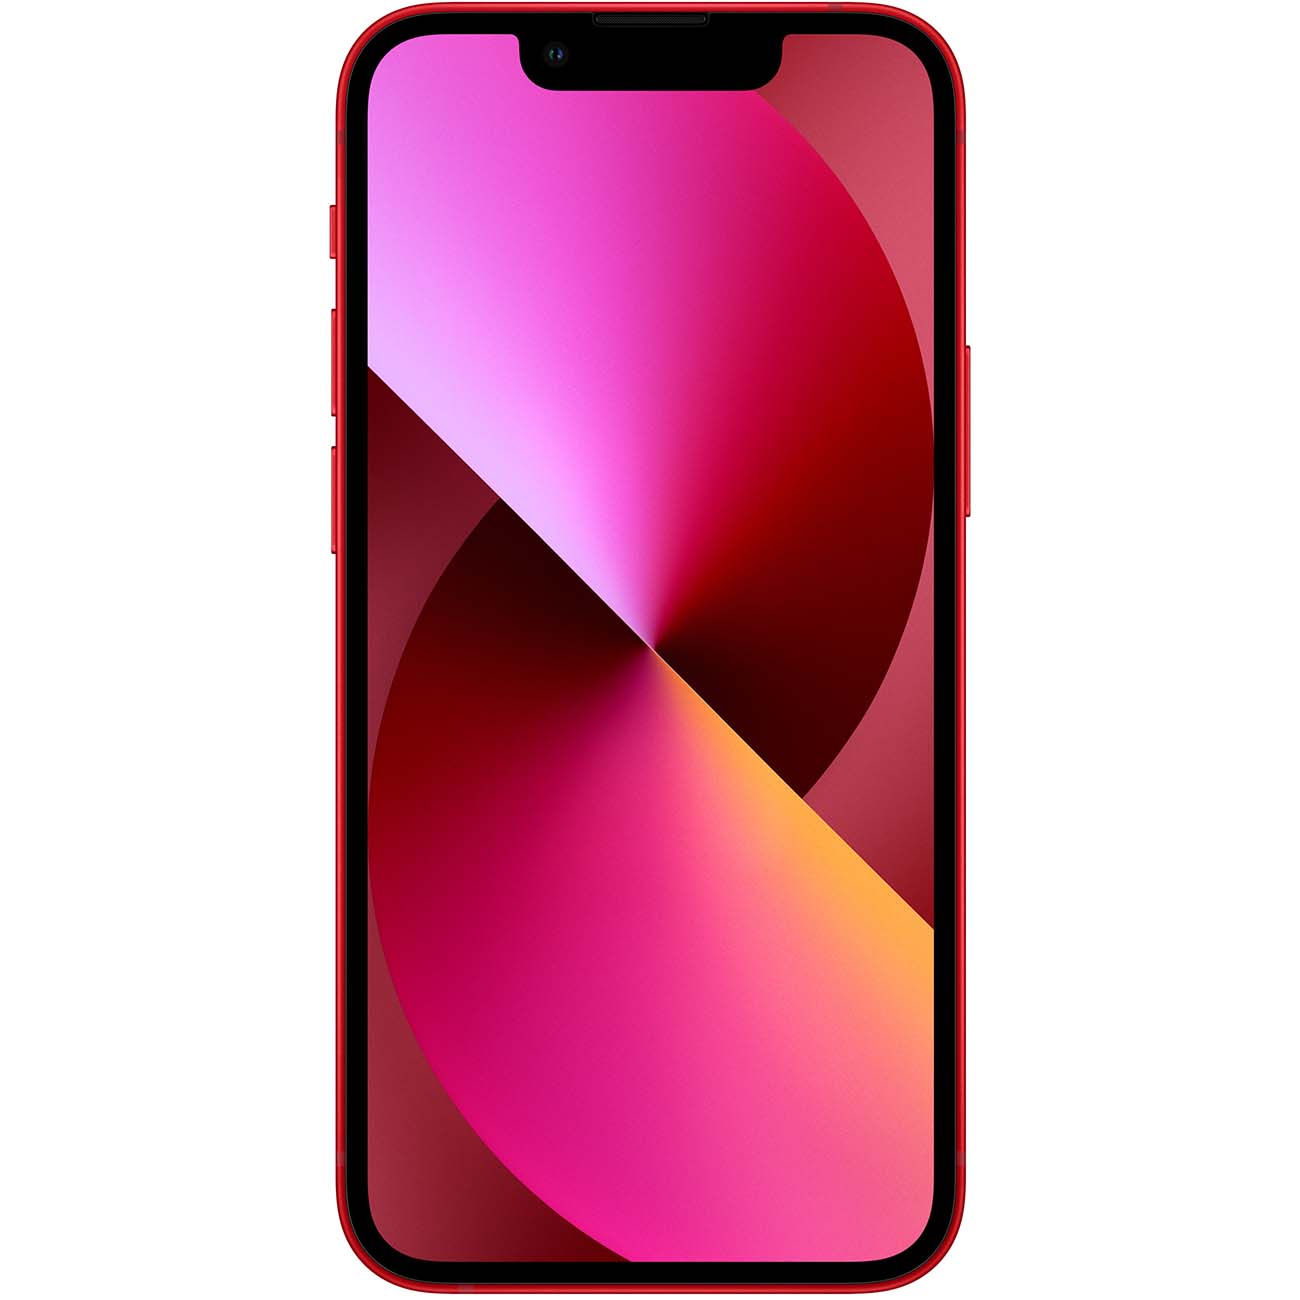 Купить смартфон apple iphone 13 256gb (product) red Apple iPhone 13 в официальном магазине Apple, Samsung, Xiaomi. iPixel.ru Купить, заказ, кредит, рассрочка, отзывы,  характеристики, цена,  фотографии, в подарок.